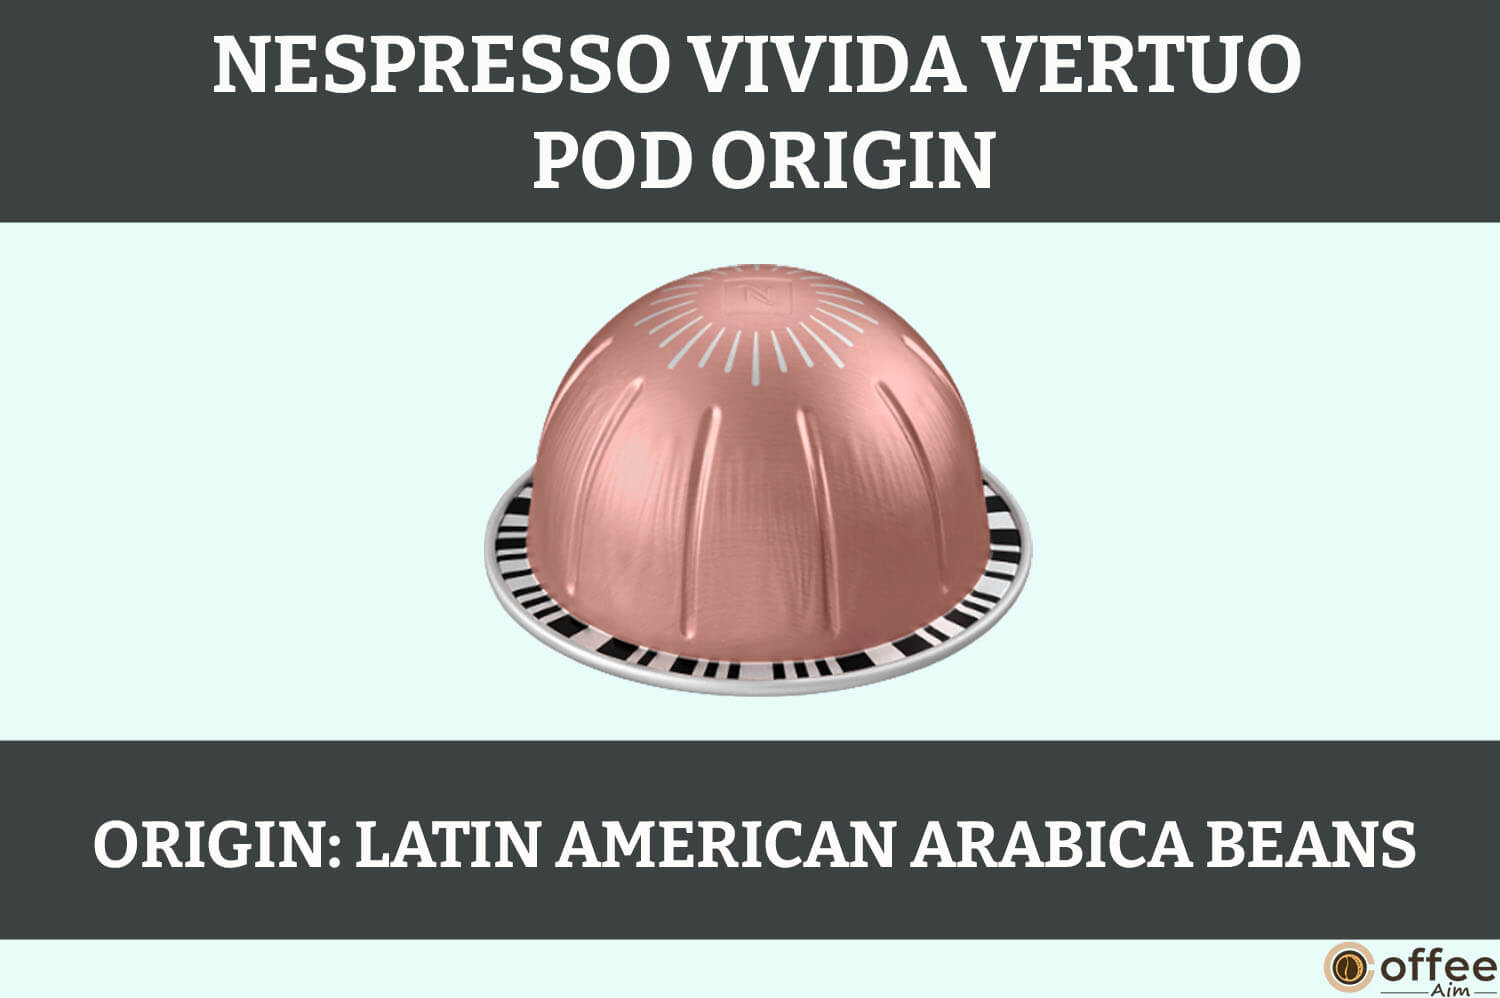 This image represents the Origin of Nespresso Vivida vertuo pod for the article "Nespresso Vivida vertuo pod review"